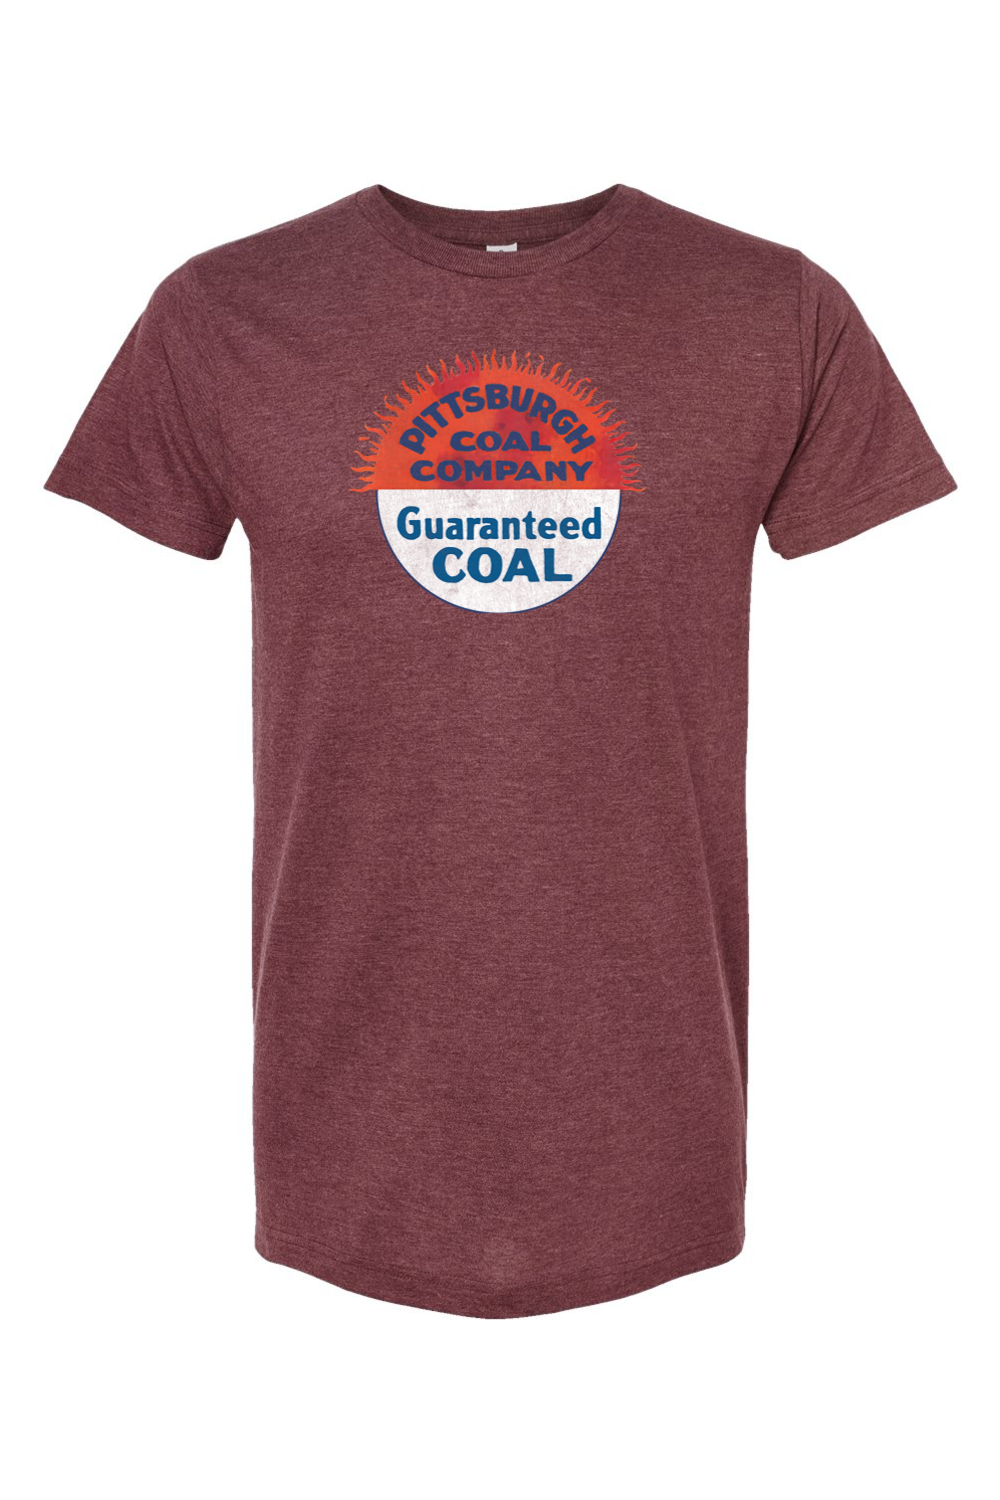 Pittsburgh Coal Company - Yinzylvania